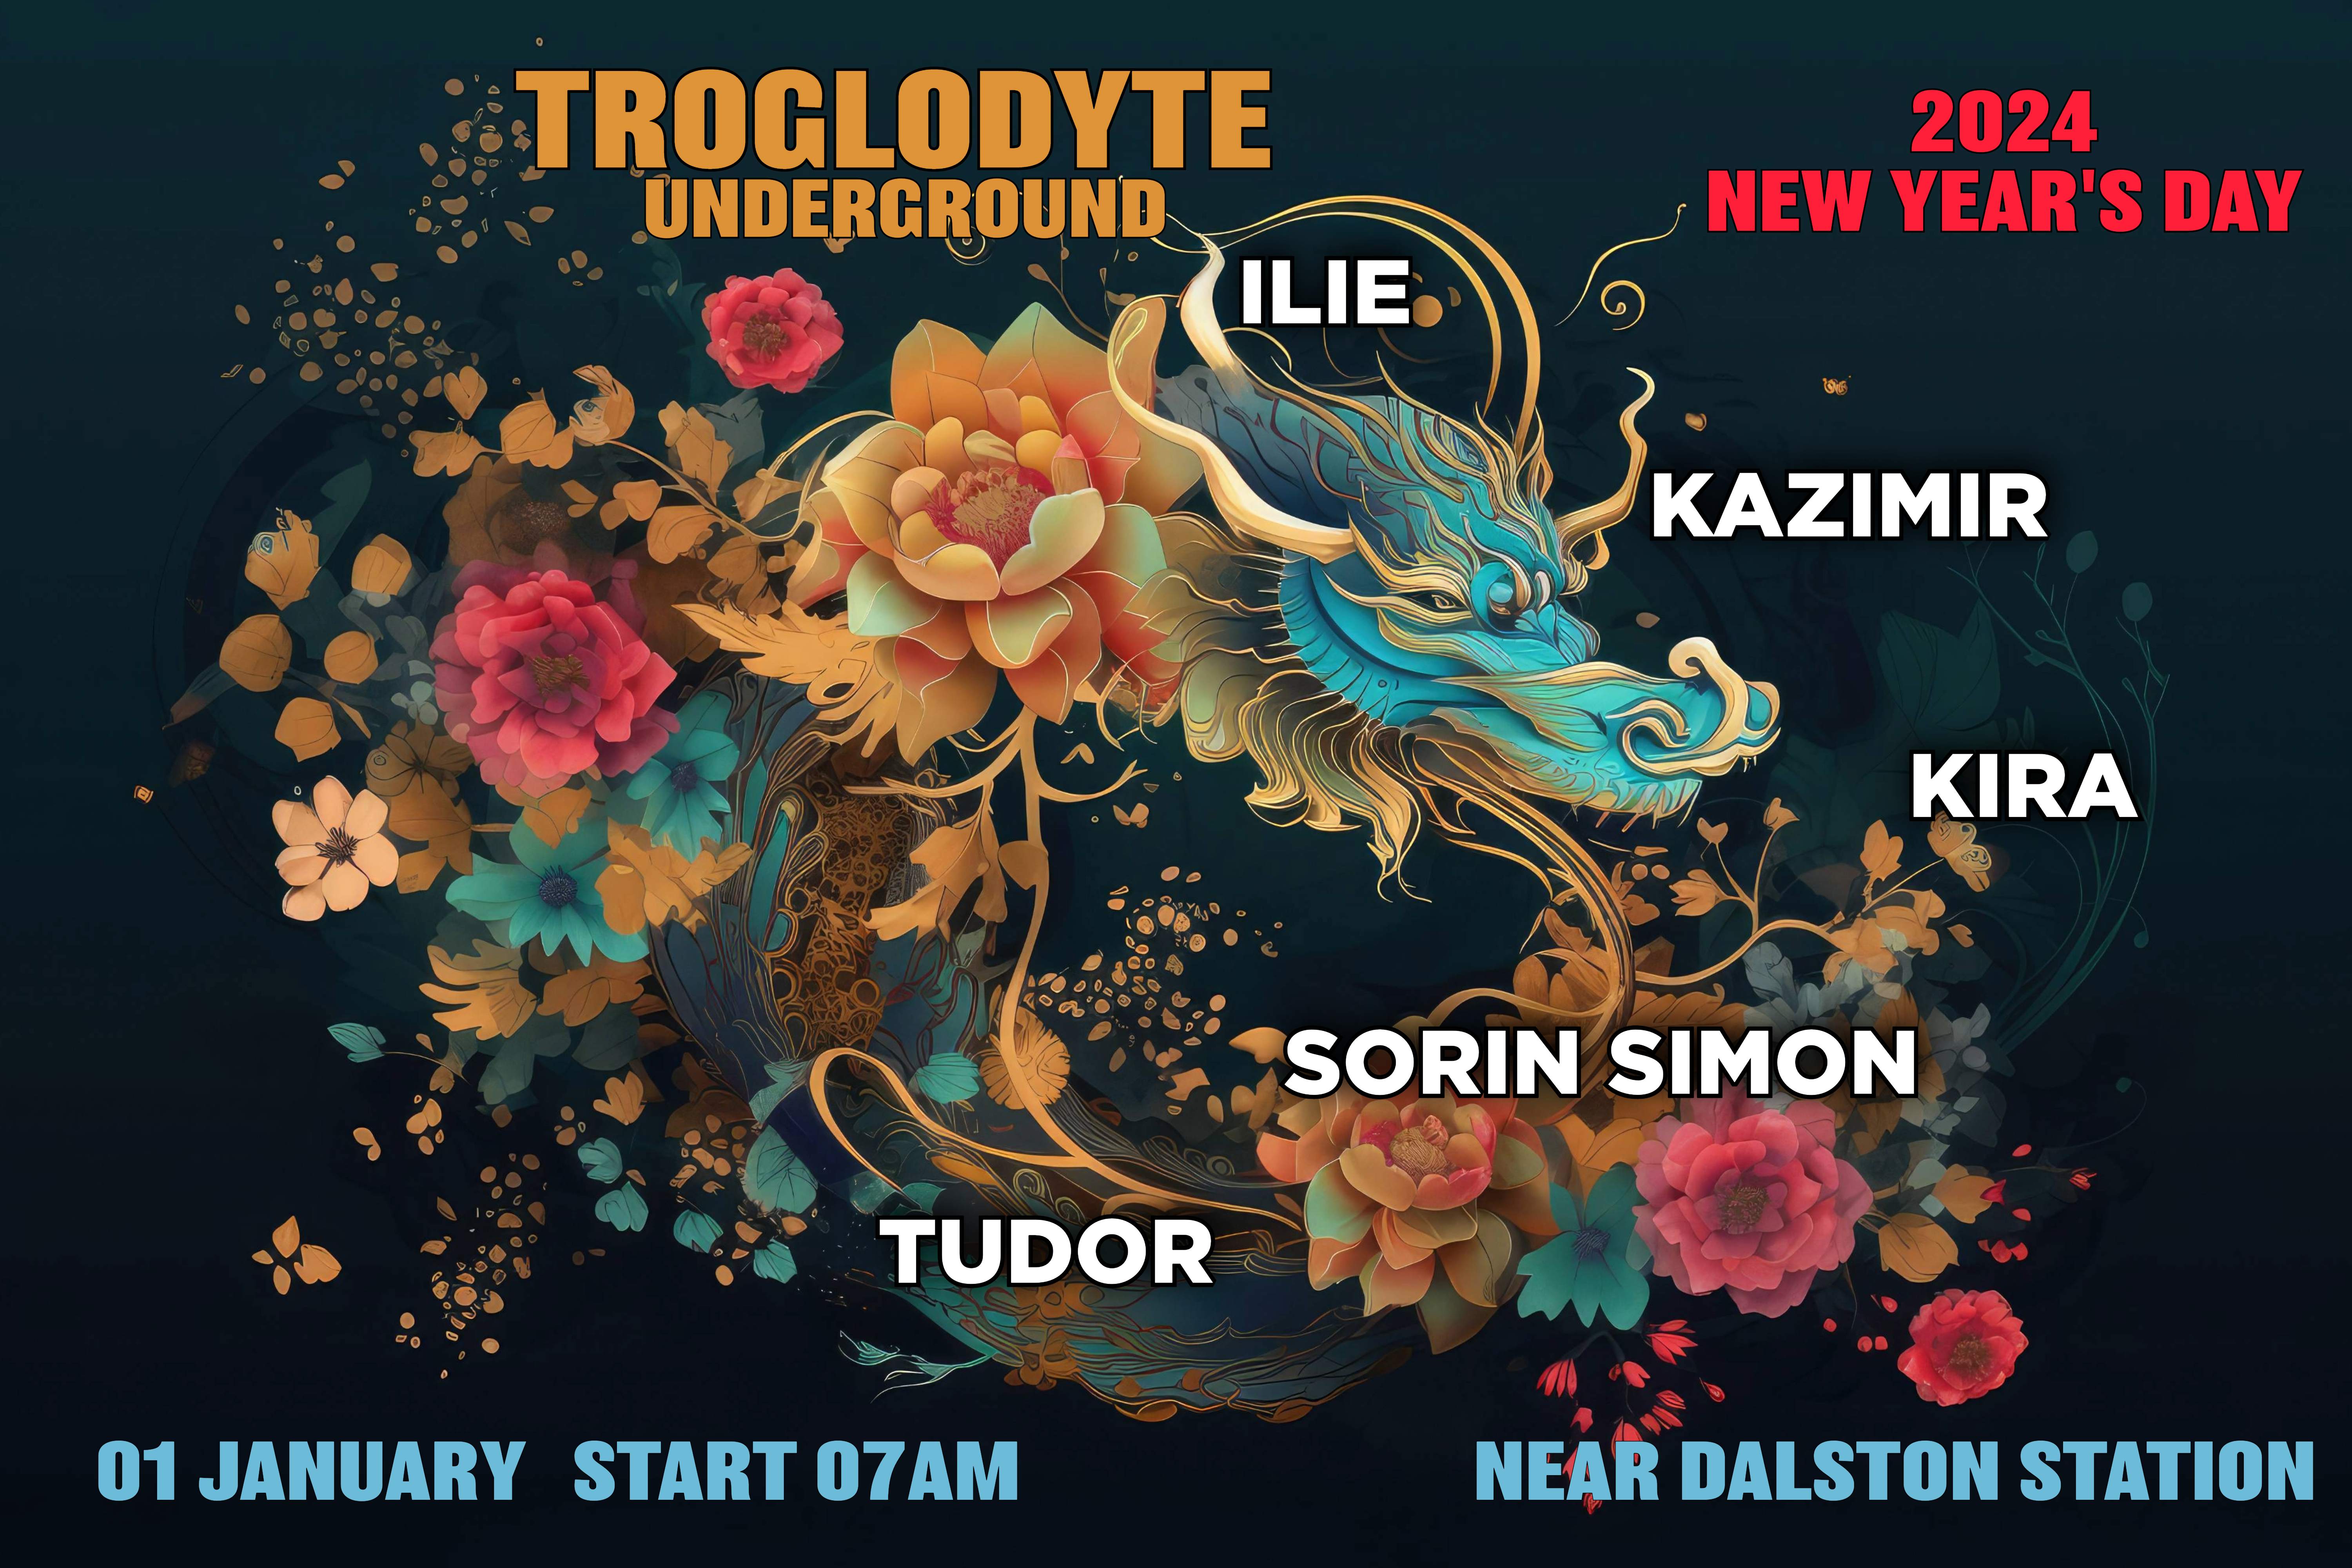 Troglodyte Underground 2024 NEW YEAR'S DAY - フライヤー表